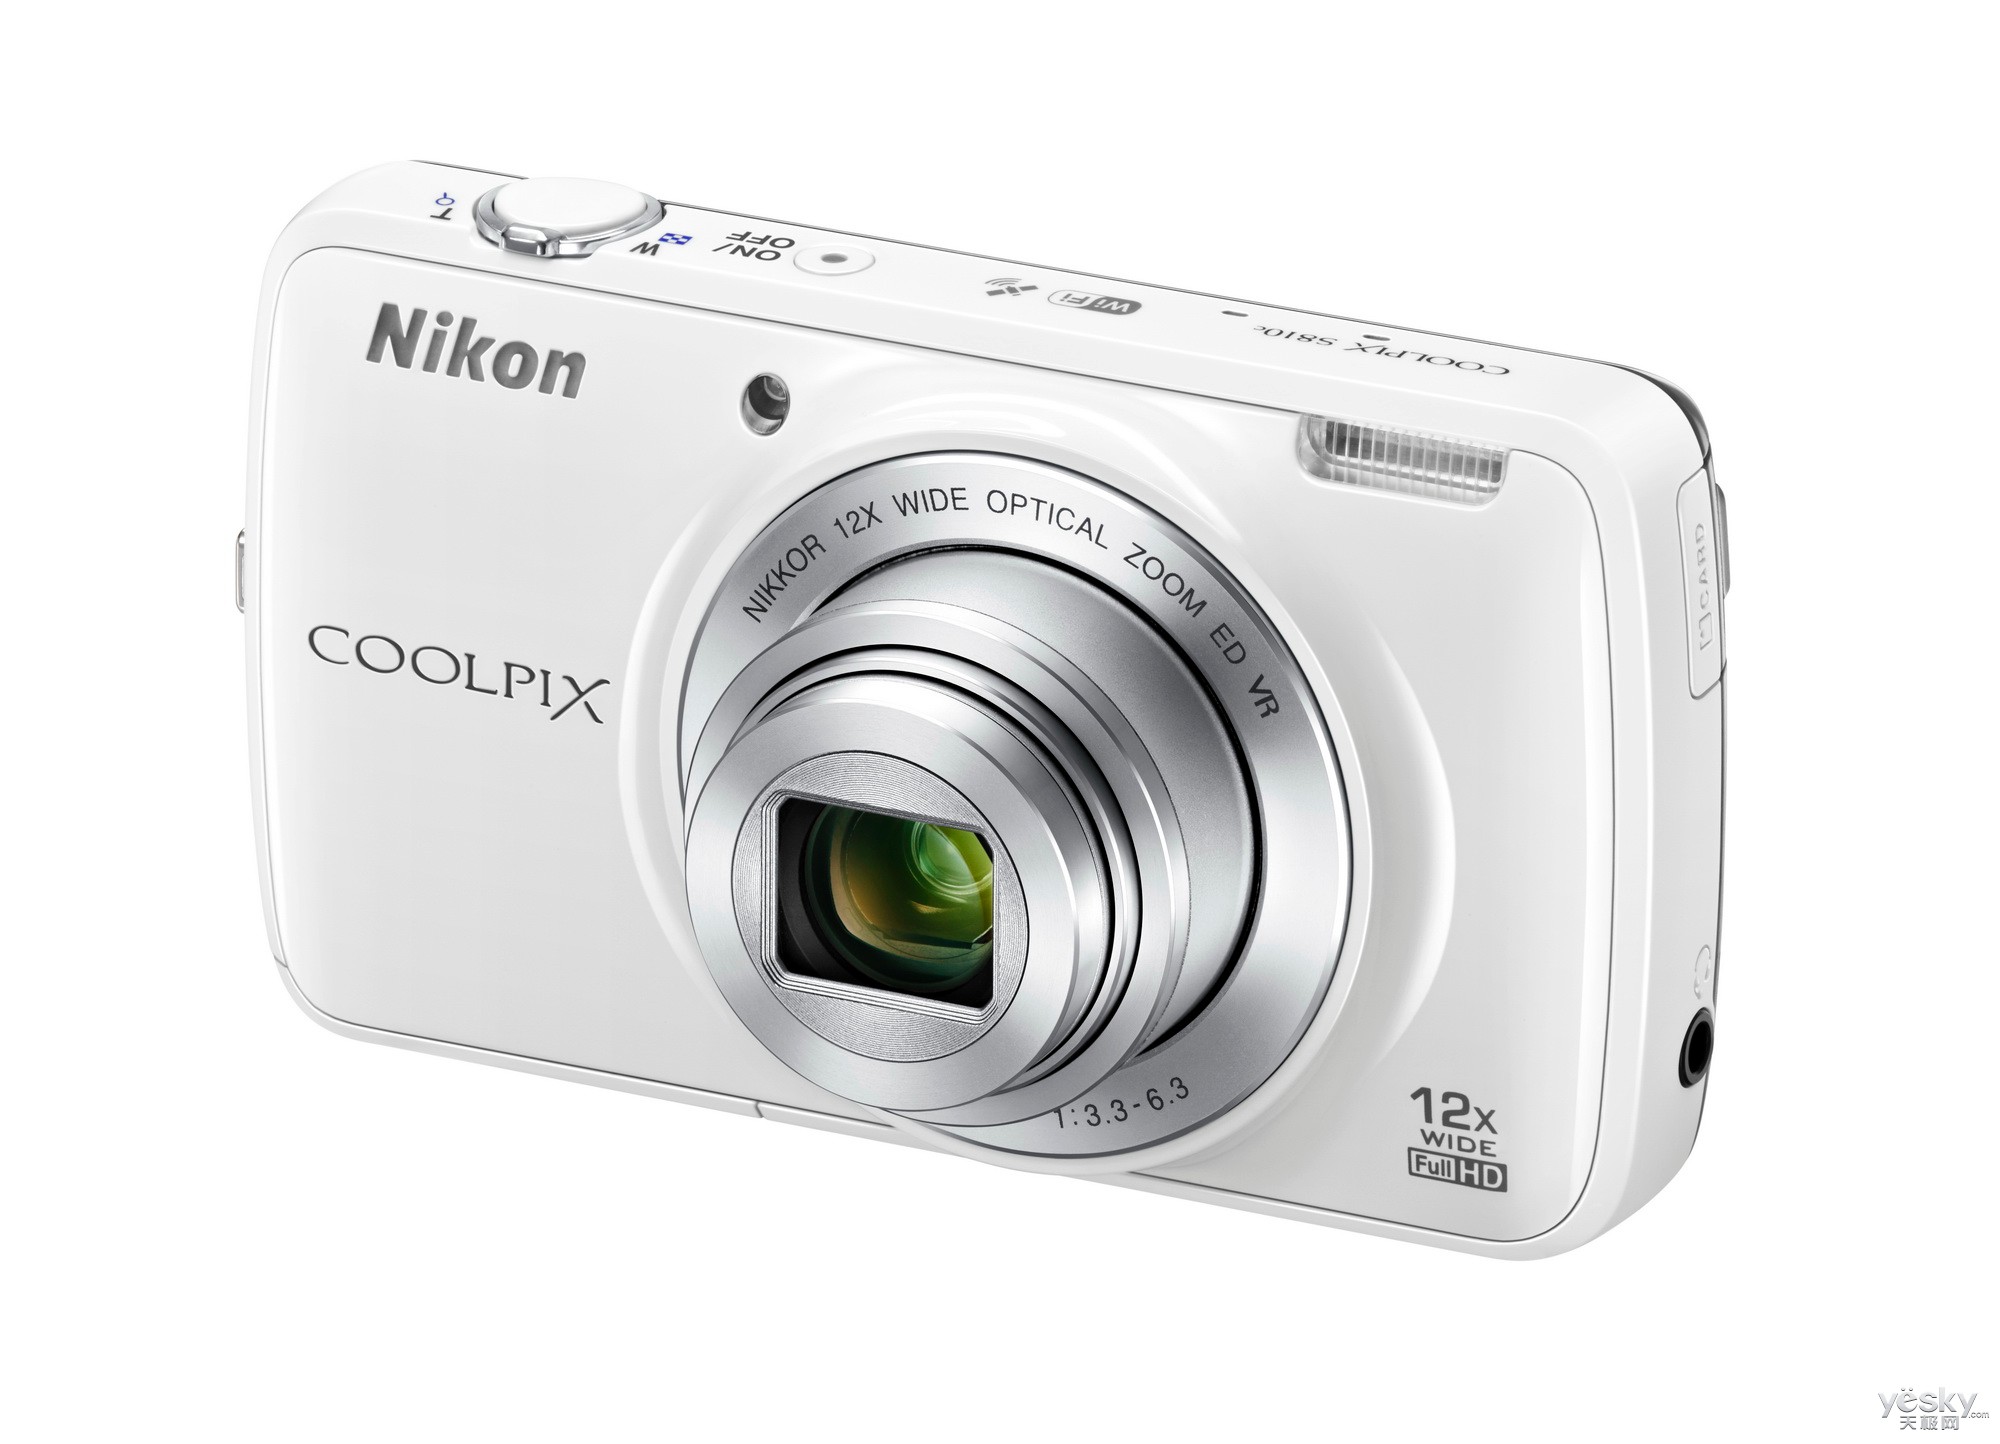 【天极网数码频道】尼康公司推出轻便型数码相机coolpix s系列新机型